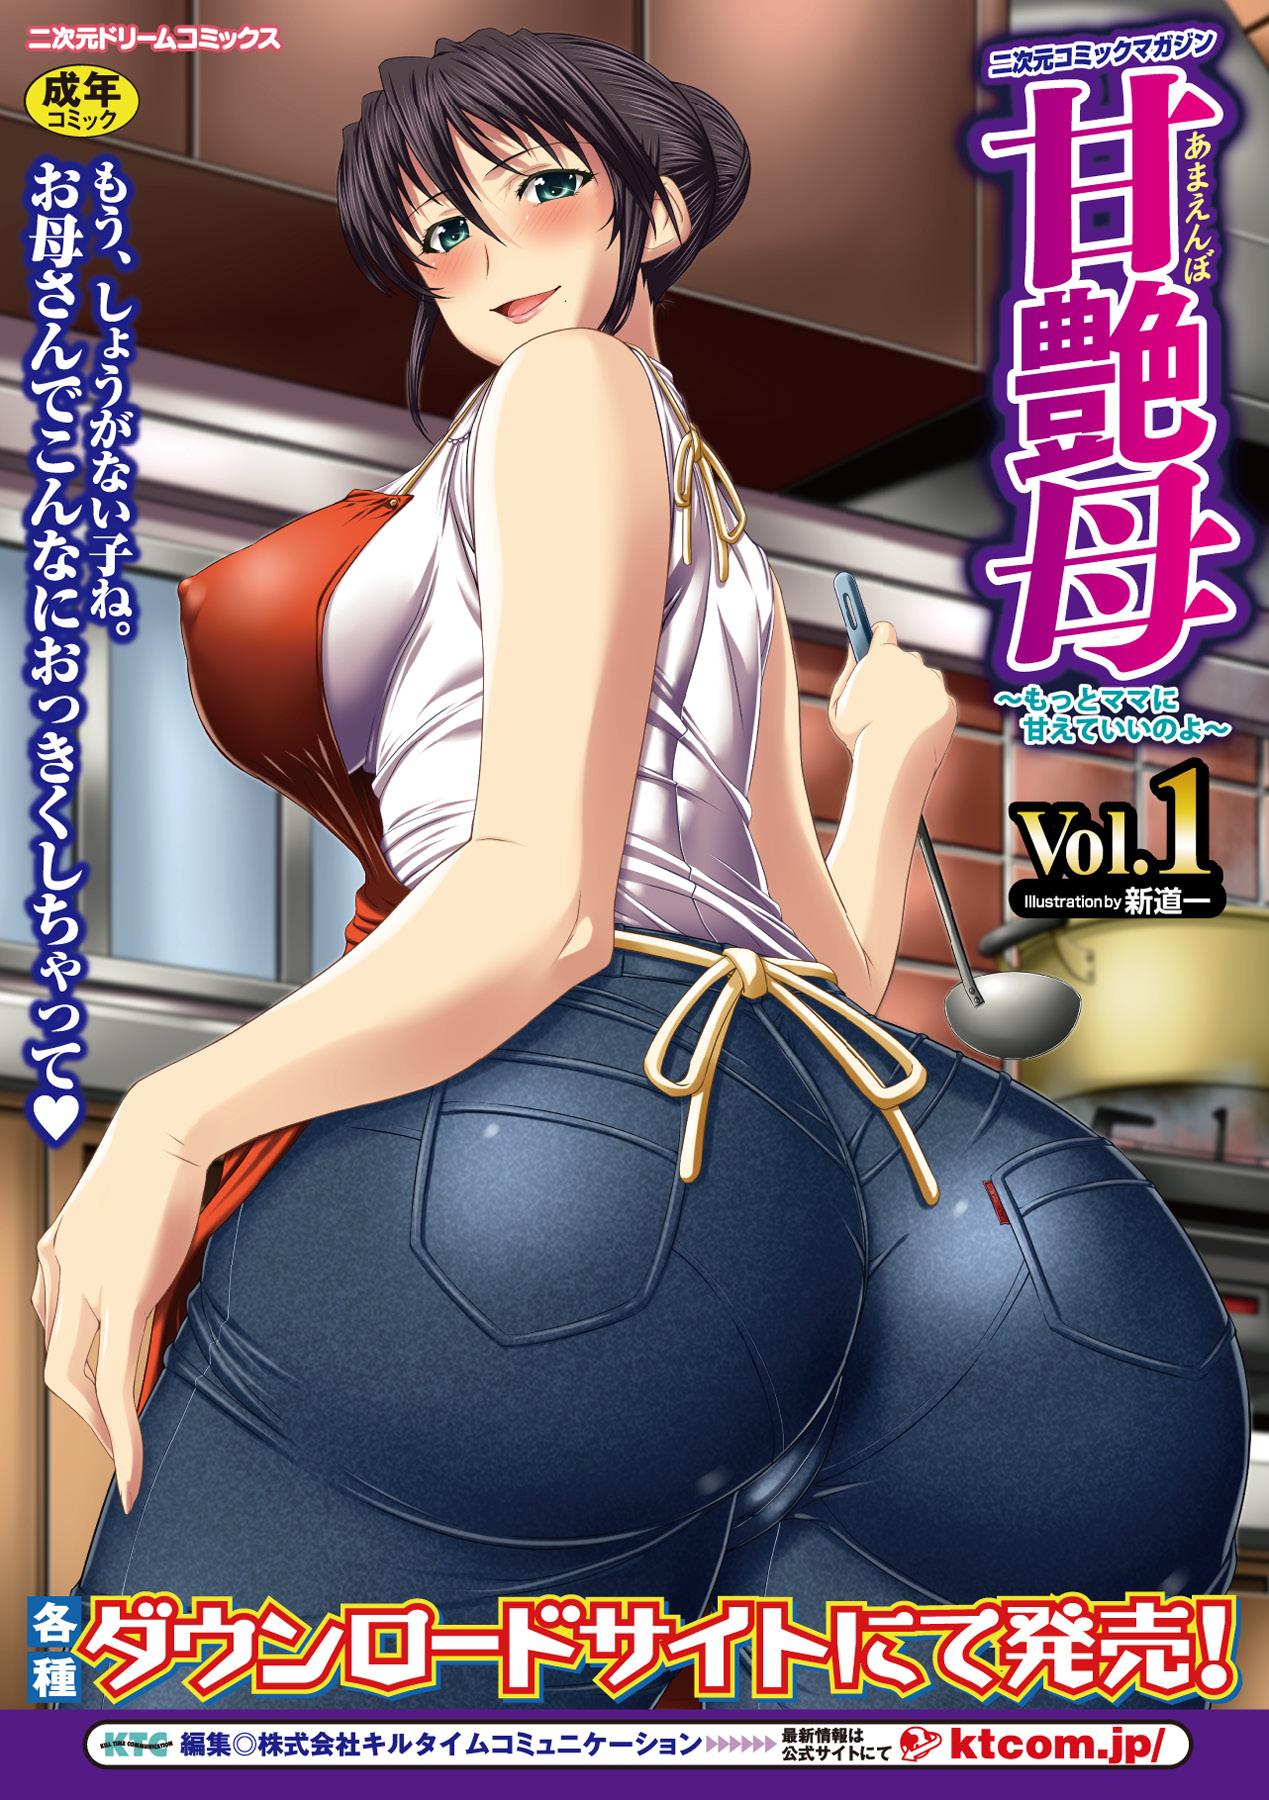 Kusurizuke Heroine wa Shirome Ahegao Ikimakuri Vol.2 64